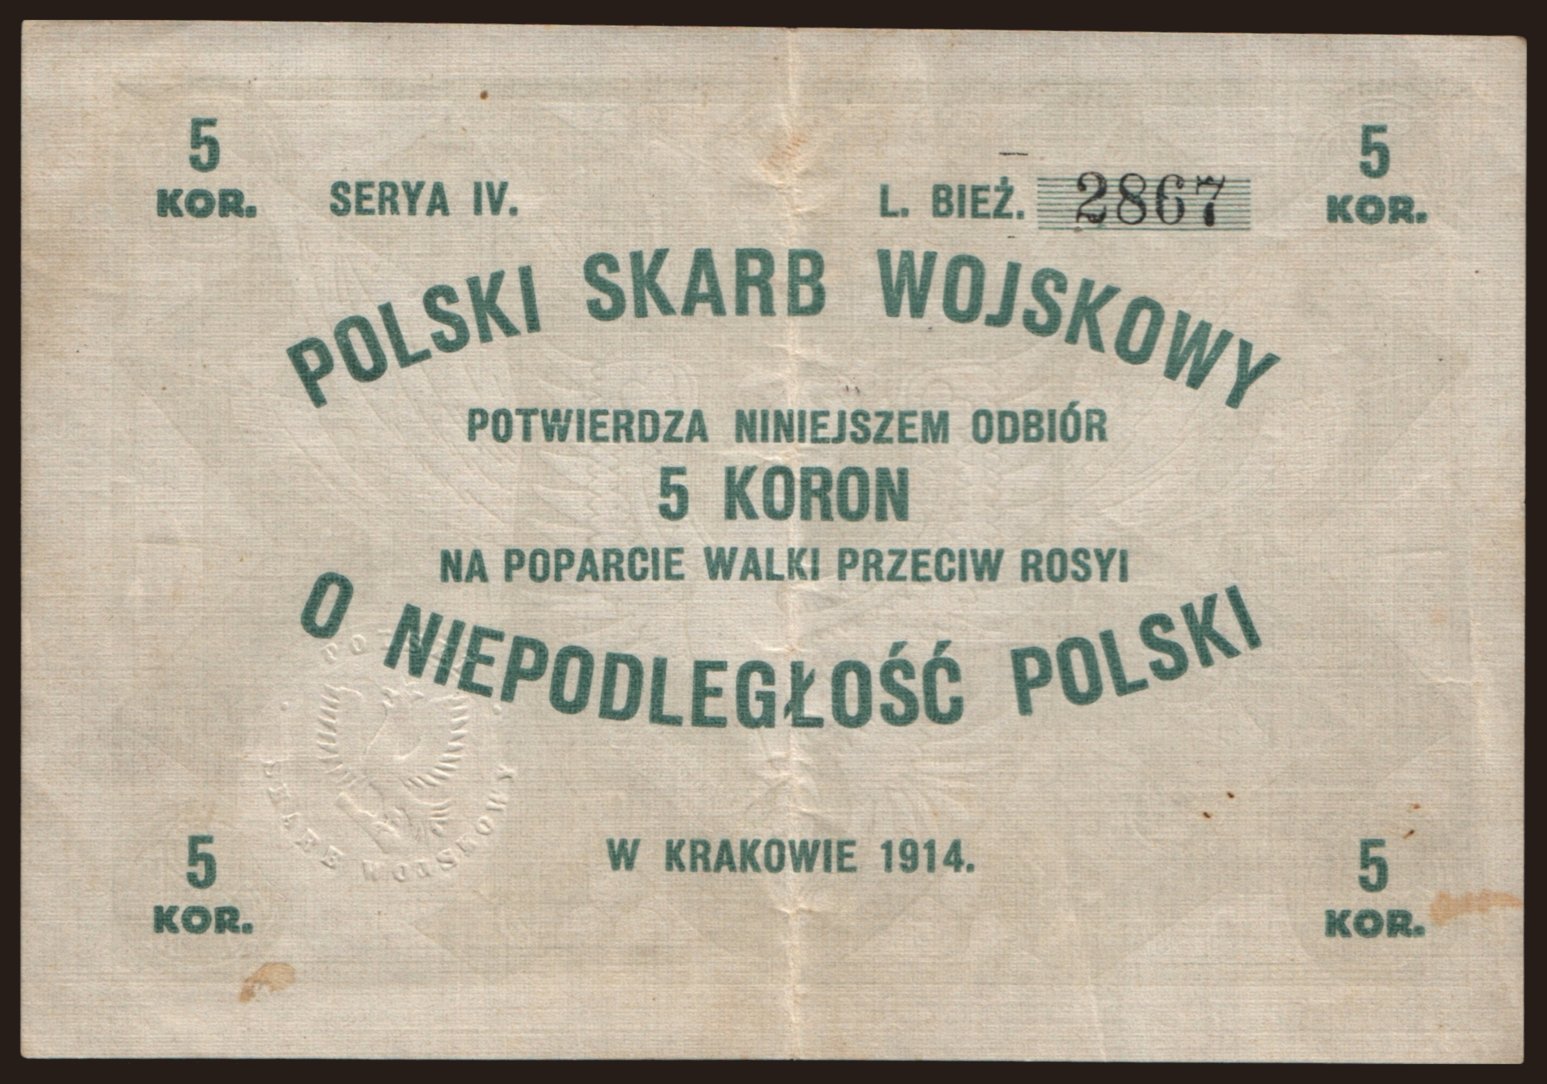 Krakow/ Polski Skarb Wojskowy, 5 koron, 1914